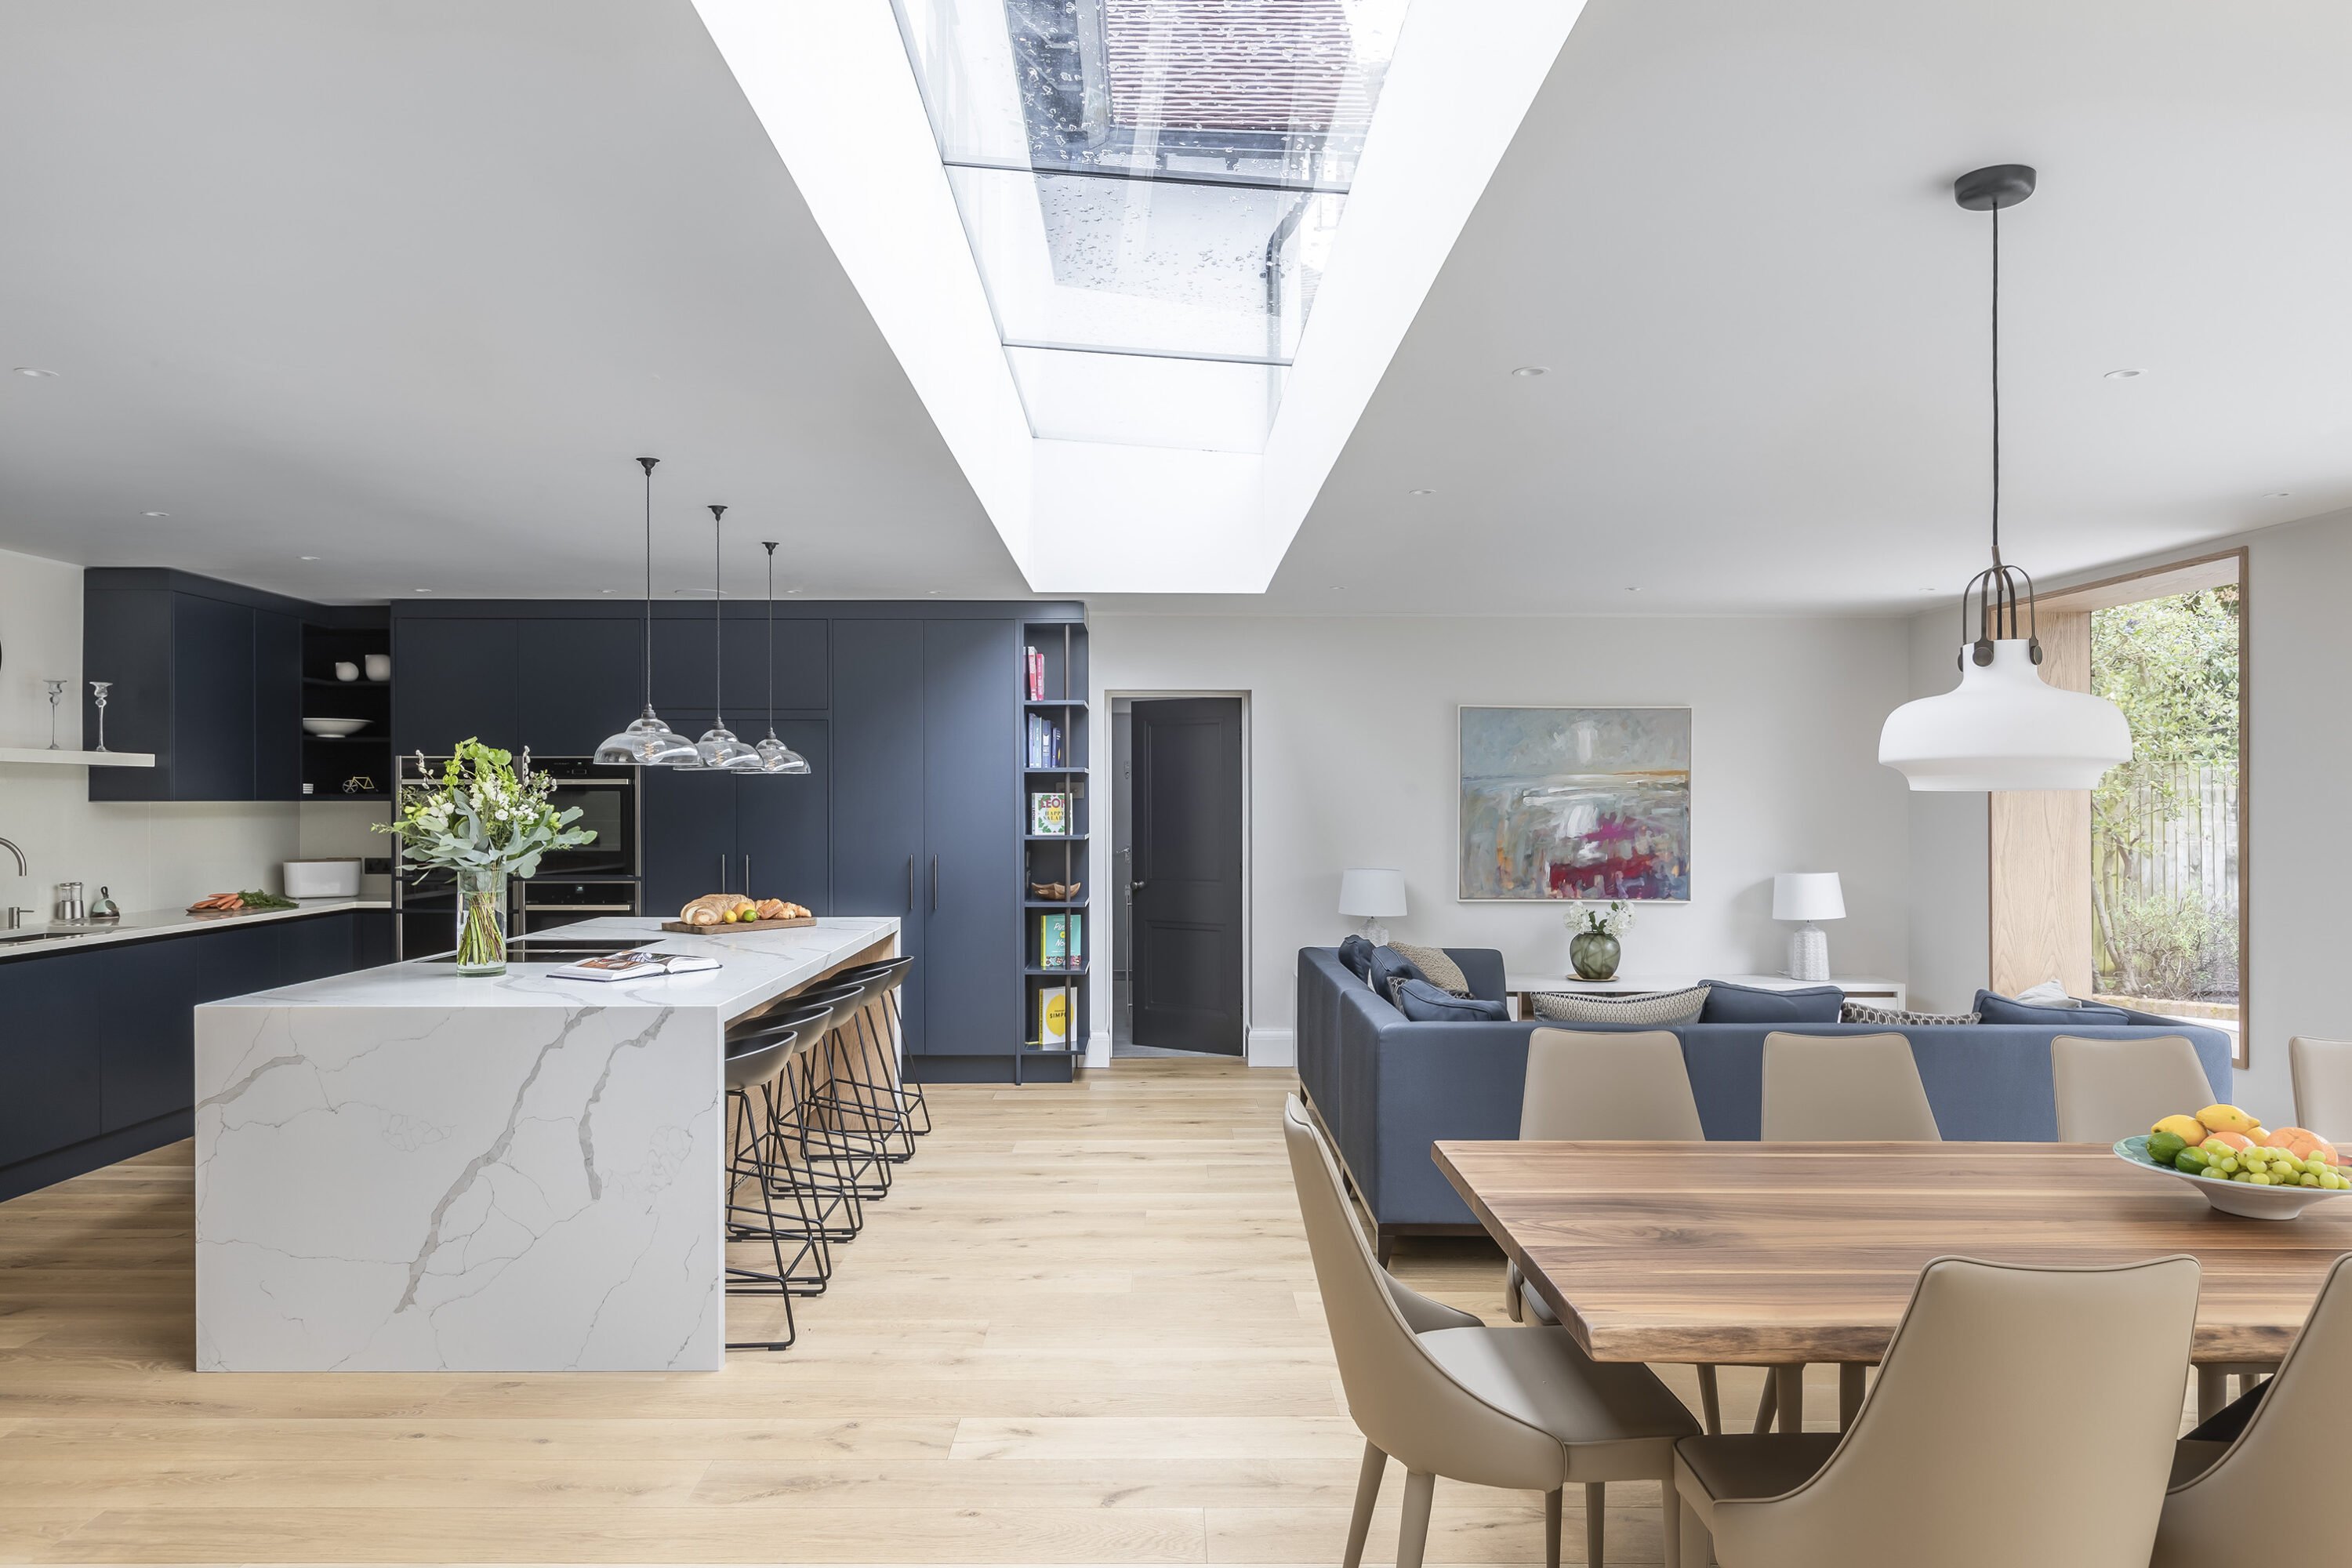 9 Best Contemporary Interior Design Ideas for Your Home | Foyr